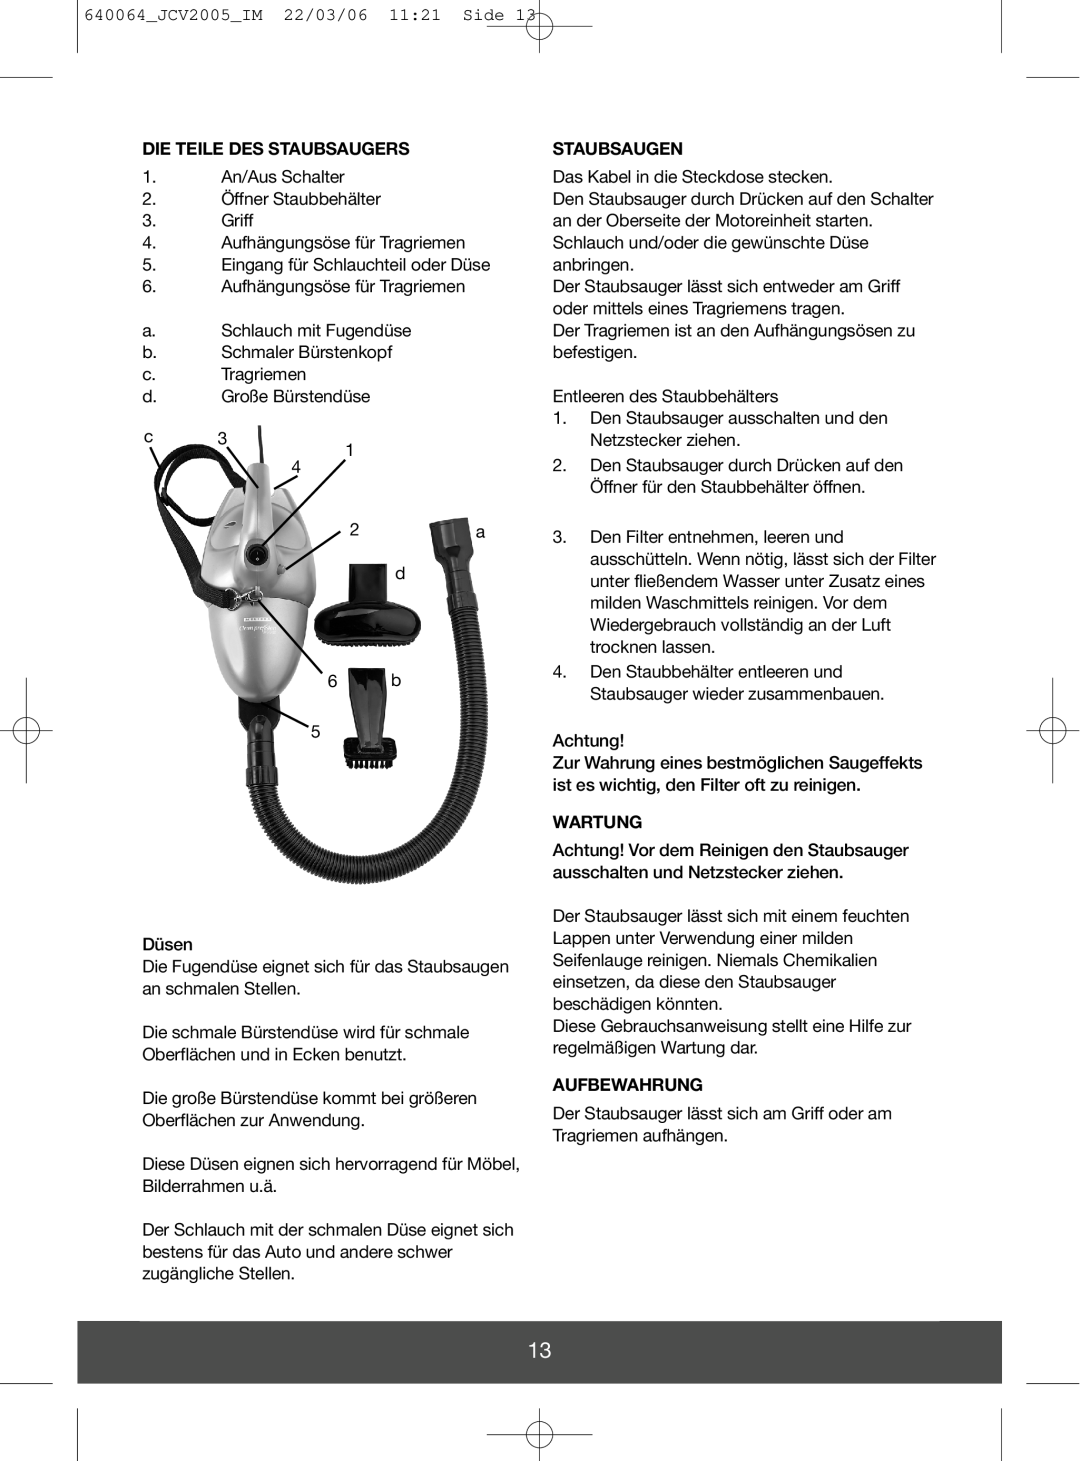 Melissa 640-092, 640-091 manual Die Teile Des Staubsaugers, Staubsaugen, Wartung, Aufbewahrung 